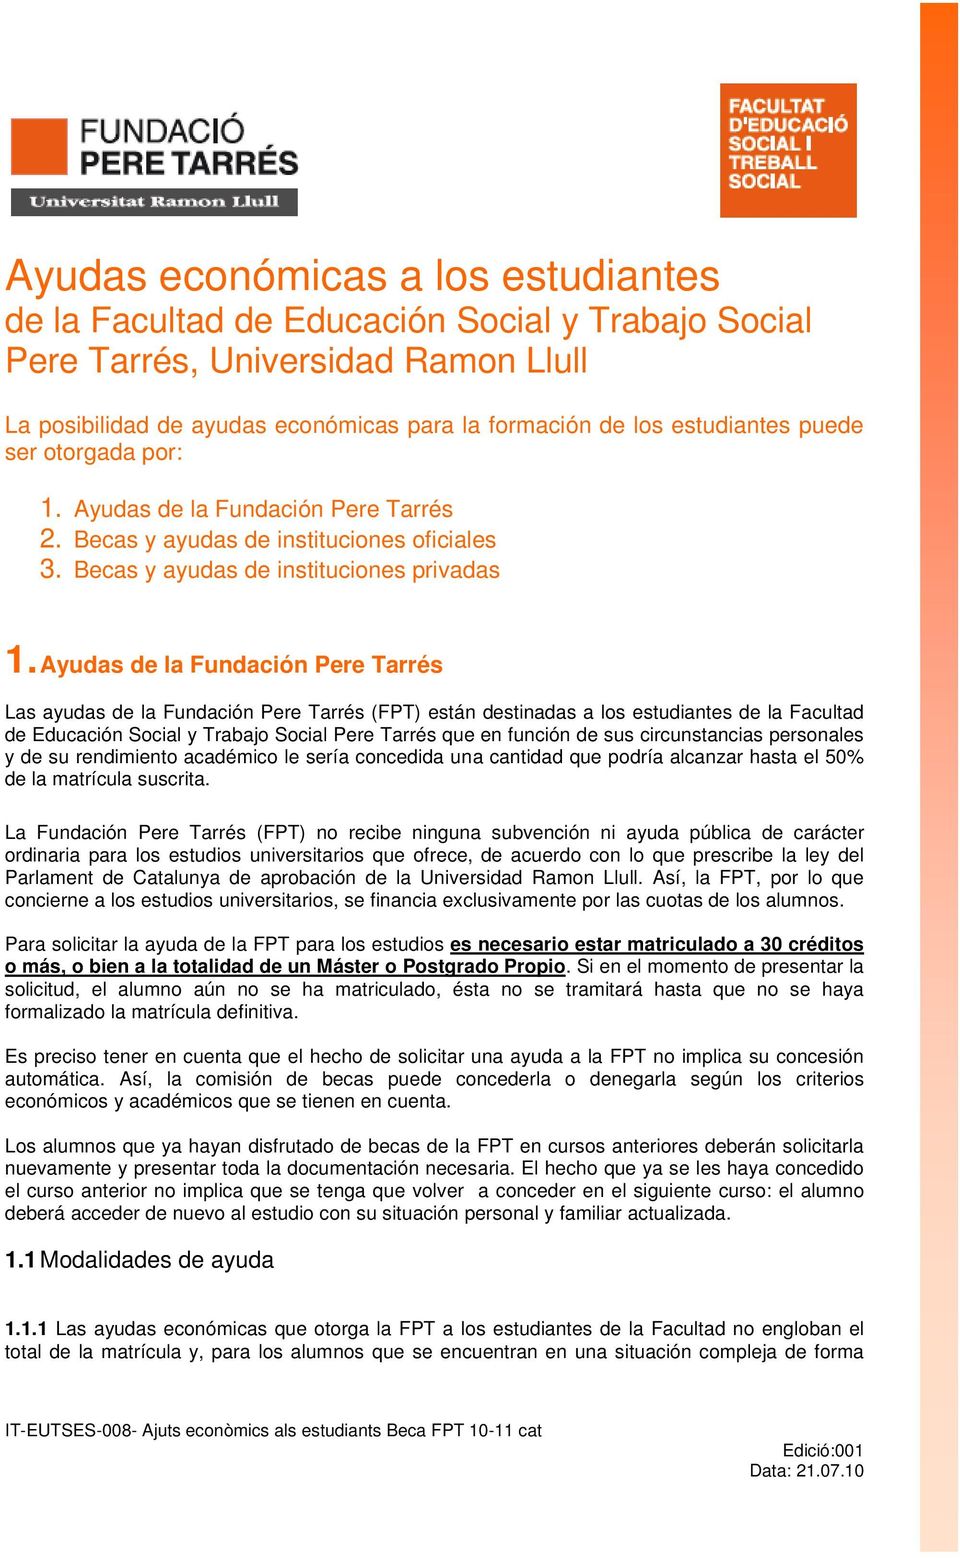 Ayudas de la Fundación Pere Tarrés Las ayudas de la Fundación Pere Tarrés (FPT) están destinadas a los estudiantes de la Facultad de Educación Social y Trabajo Social Pere Tarrés que en función de